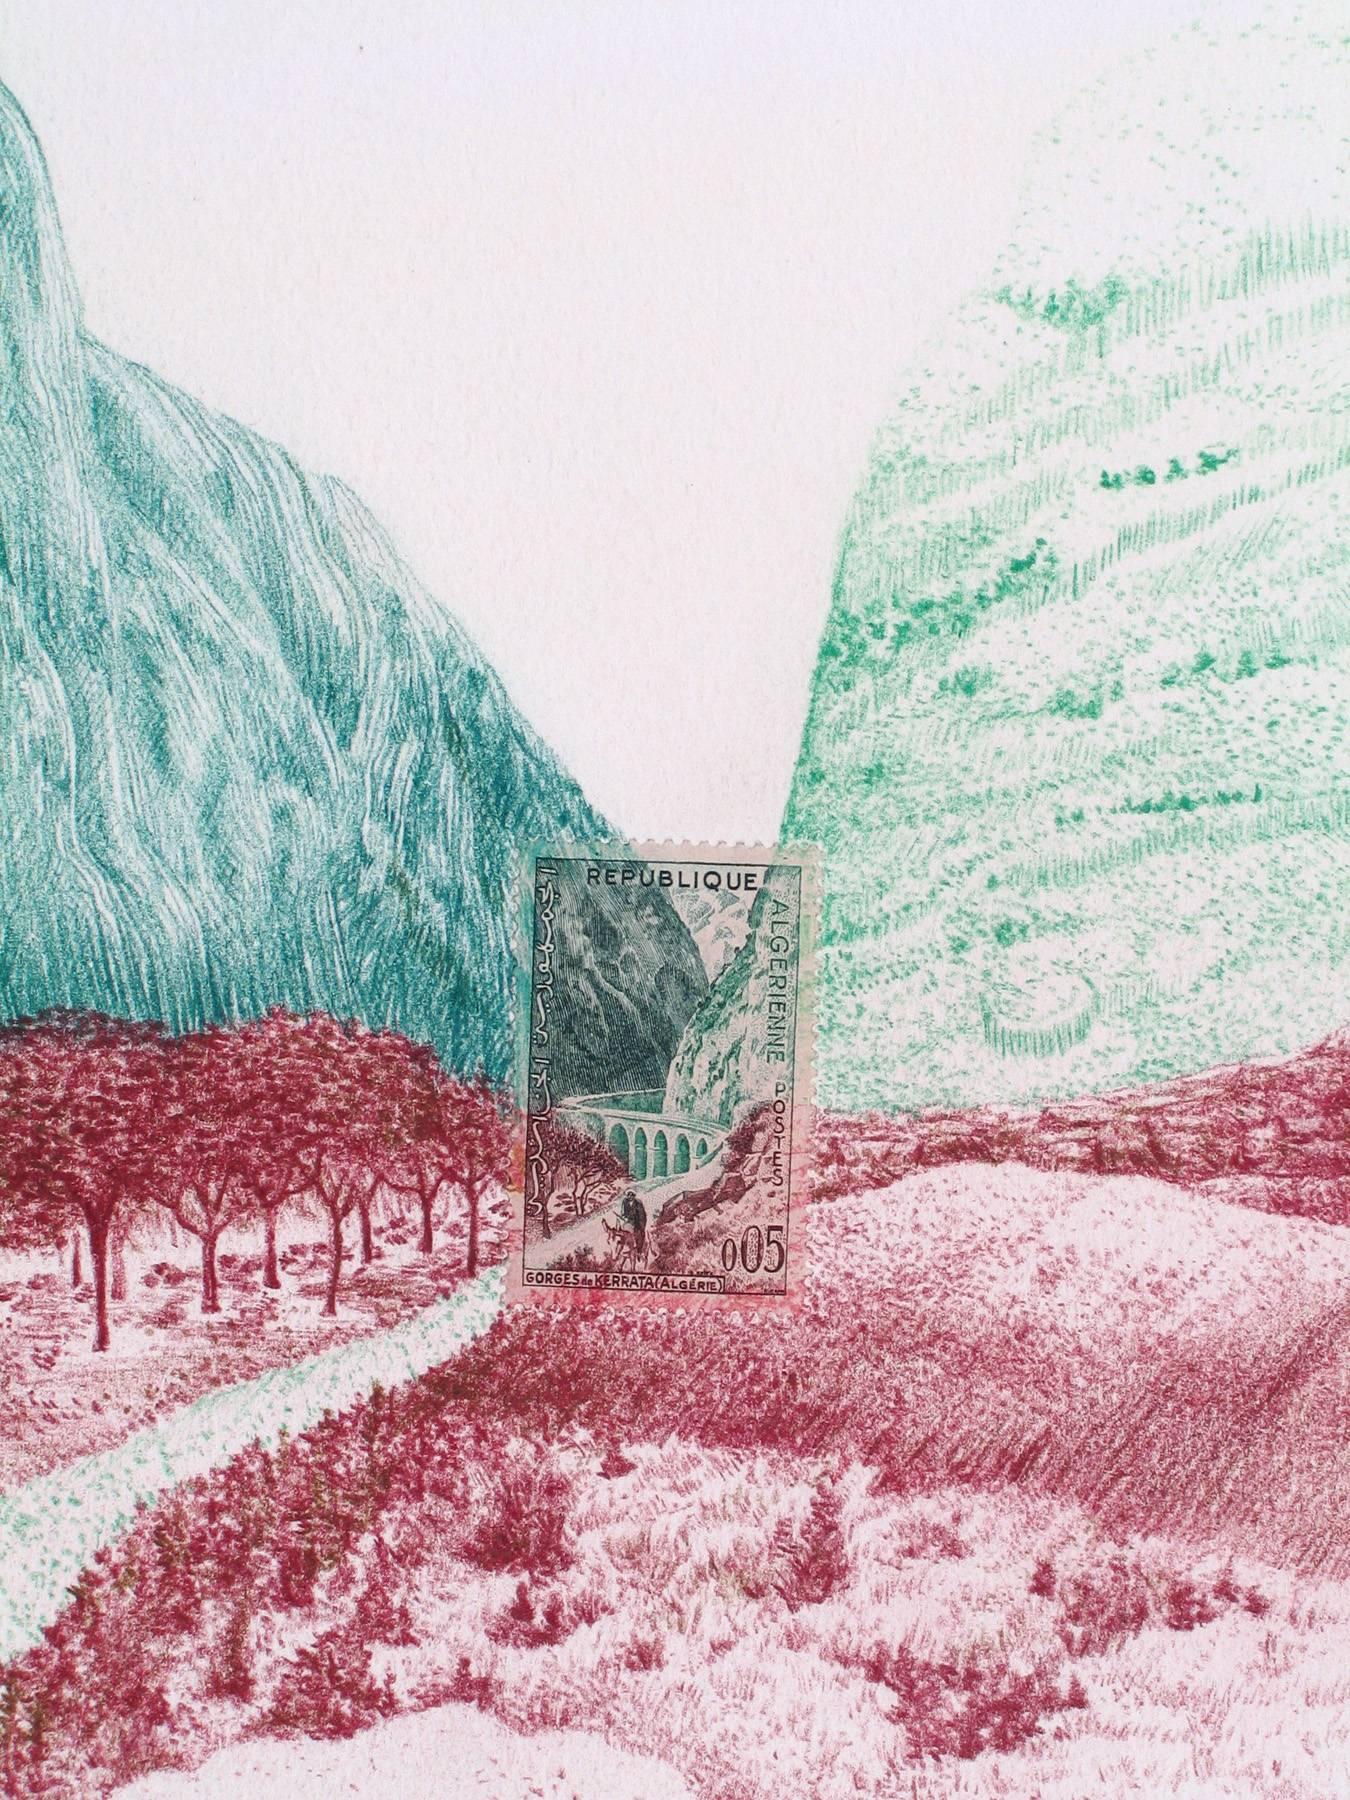 Algénie, Pass de montagne : dessin détaillé au crayon en couleur d'un paysage et d'un timbre